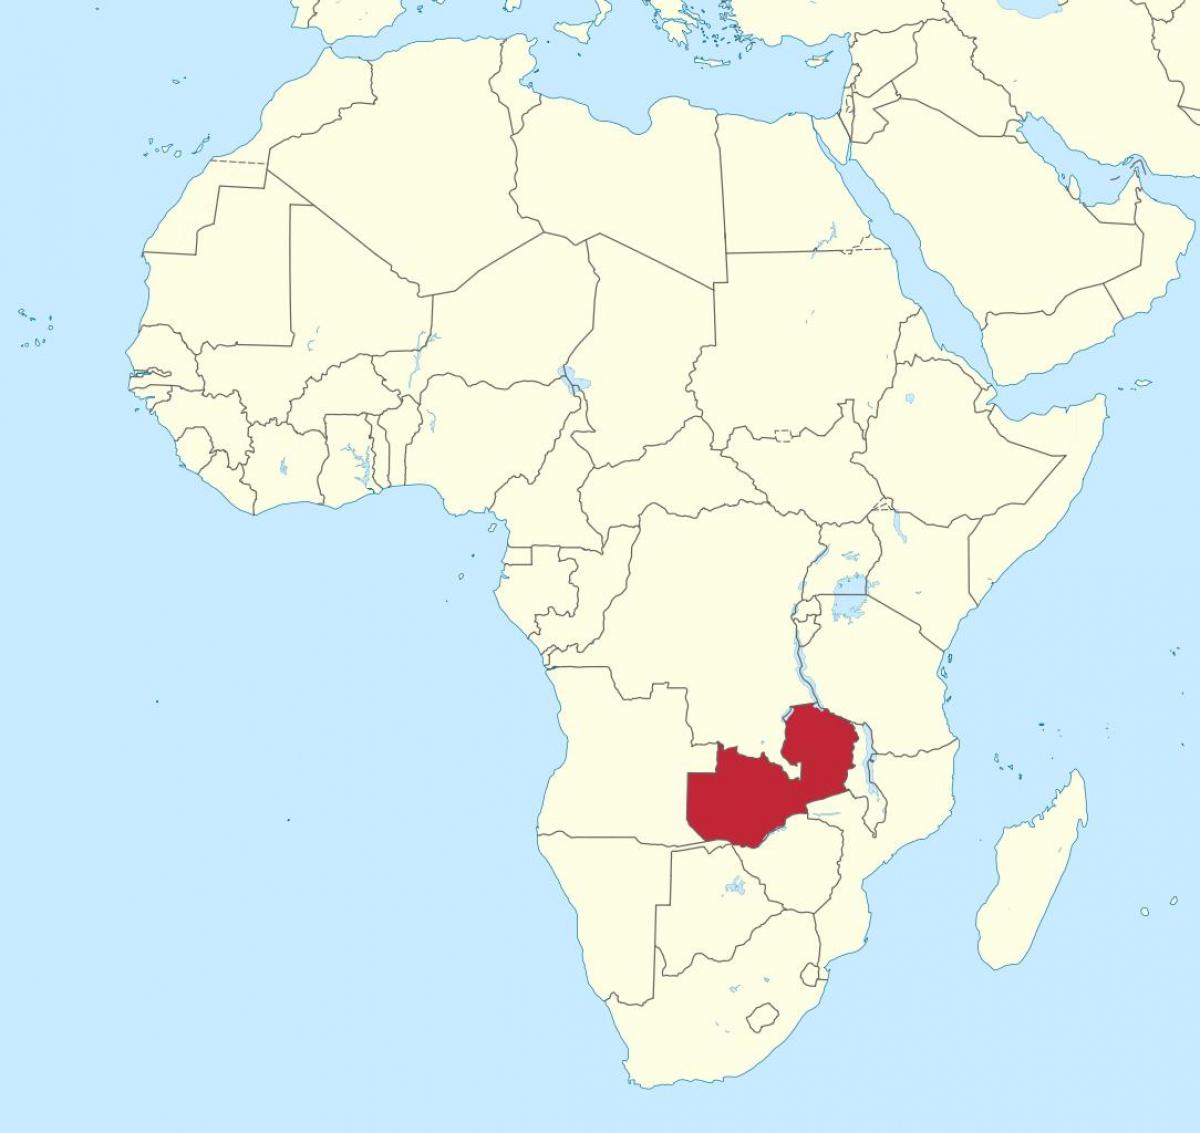 რუკა აფრიკის რესპუბლიკა ზამბიის აჩვენებს